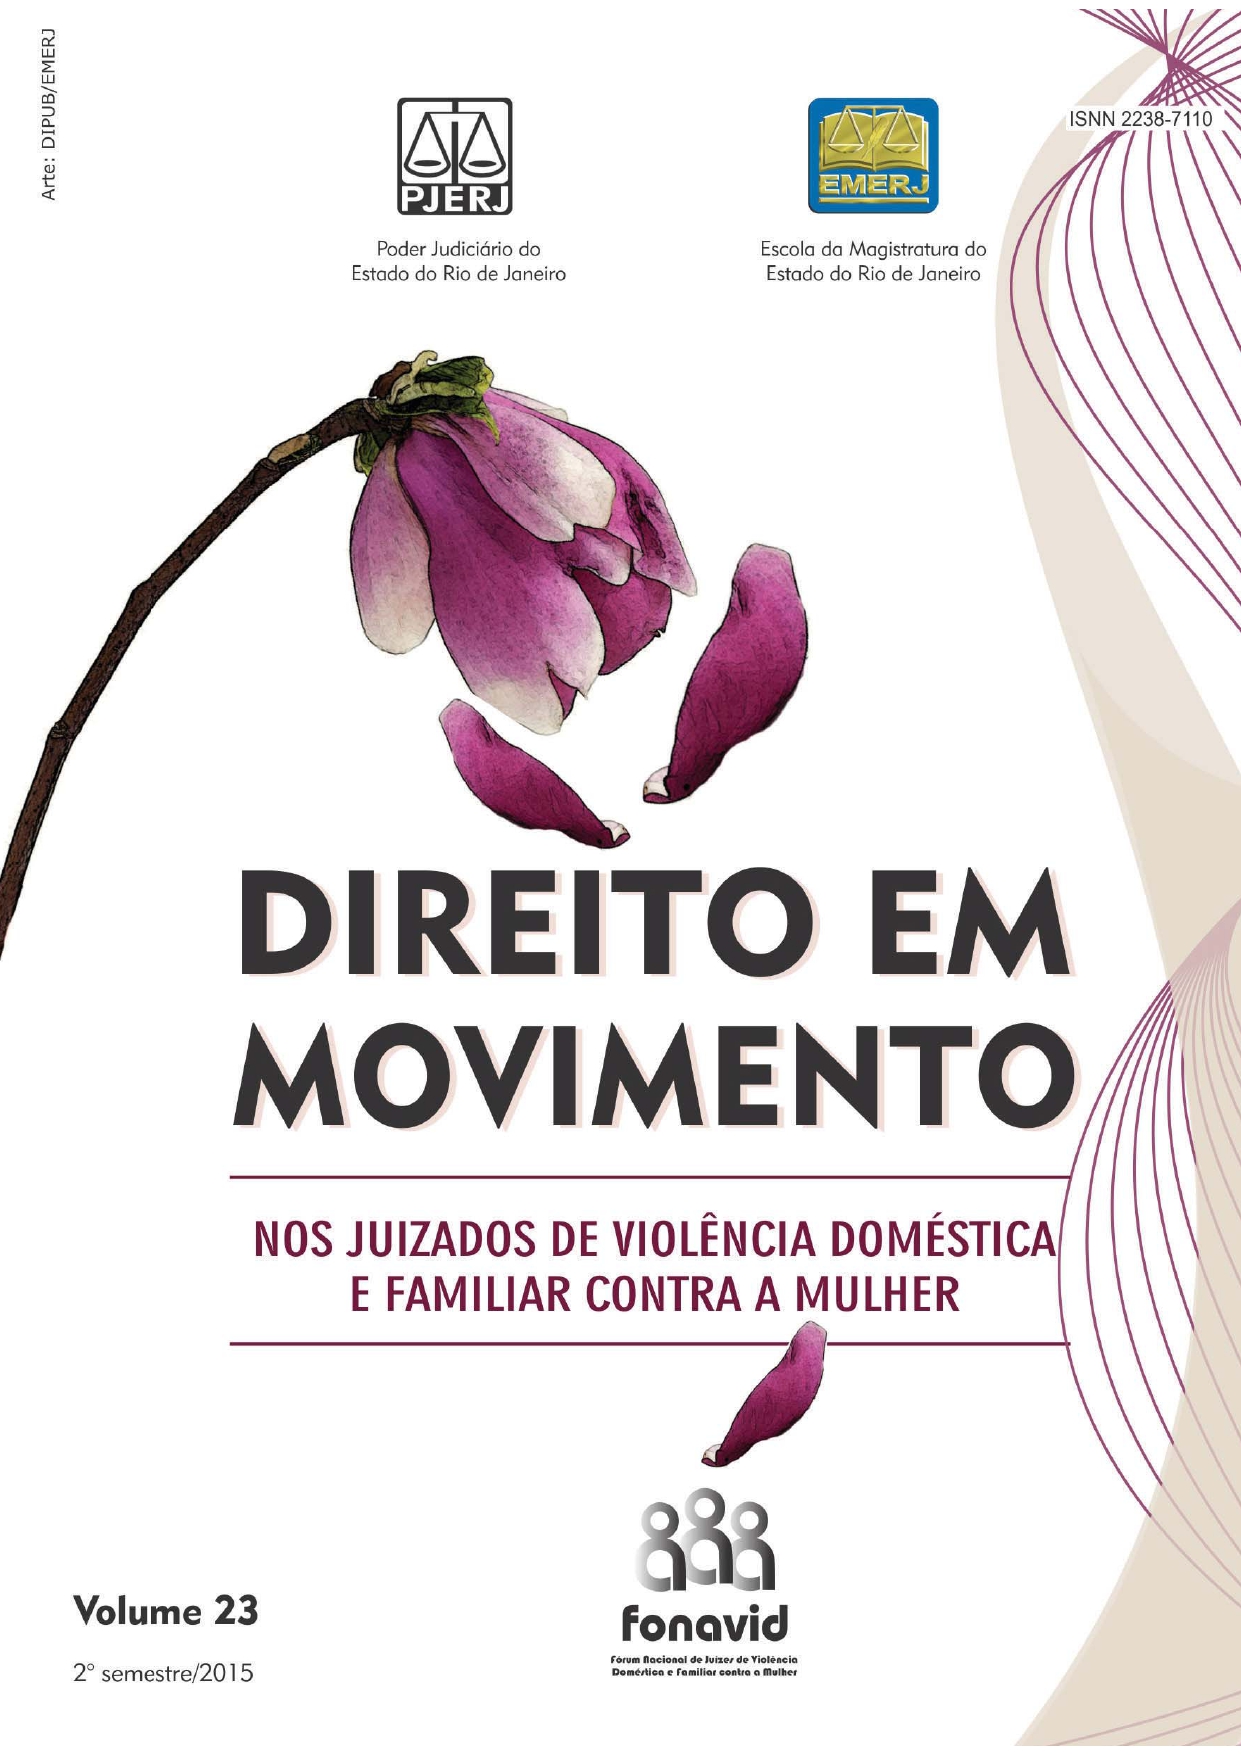 					Afficher Vol. 23 (2015): Revista Direito em Movimento (Numeração antiga)
				